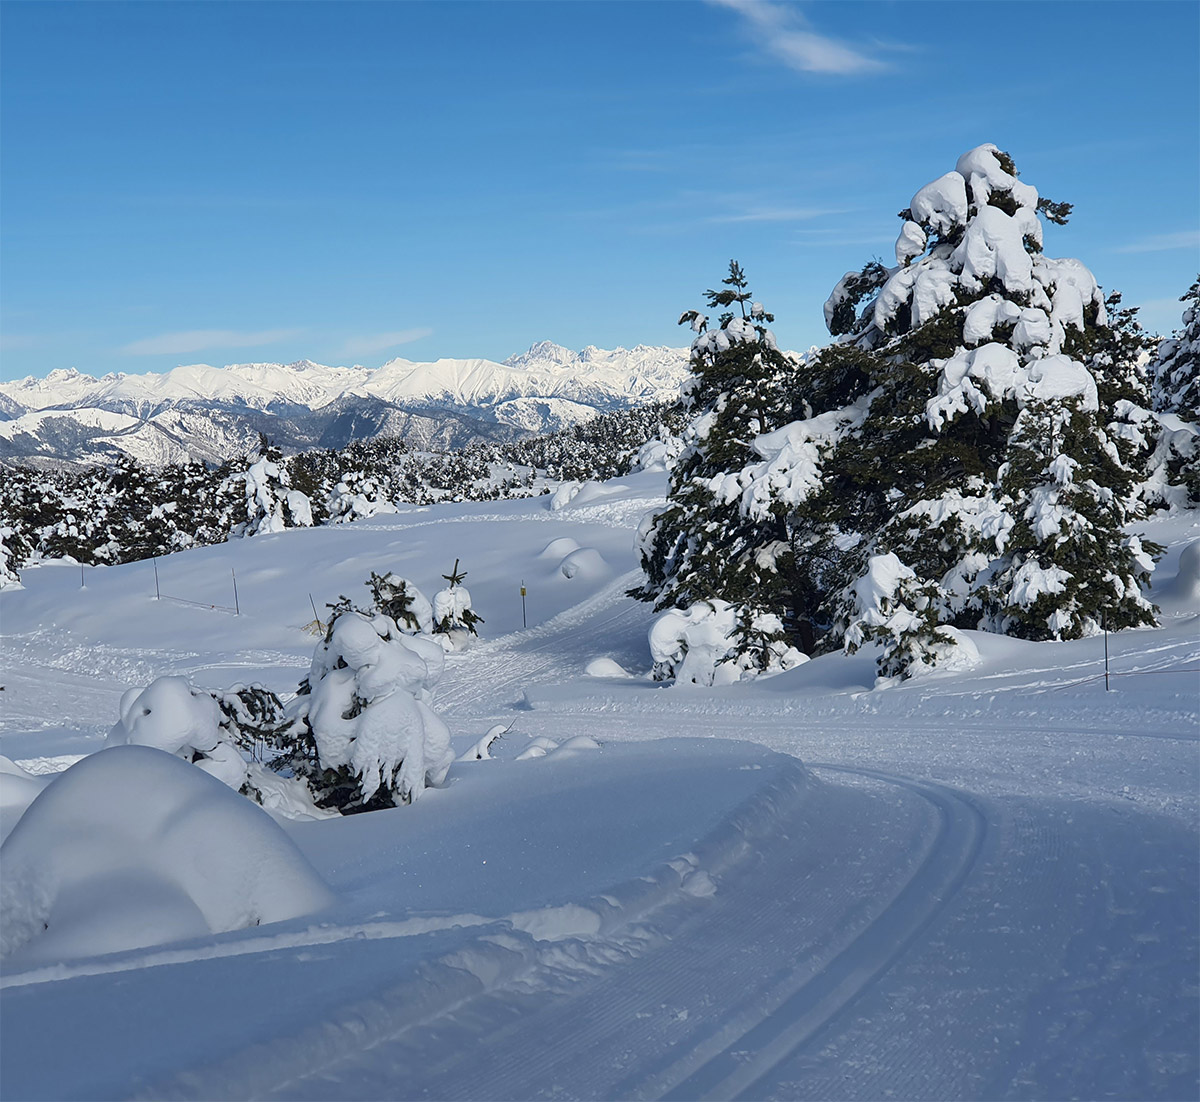 De superbes pistes de ski de fond qui ouvrent sur des panoramas fantastiques.  (Photo JL)